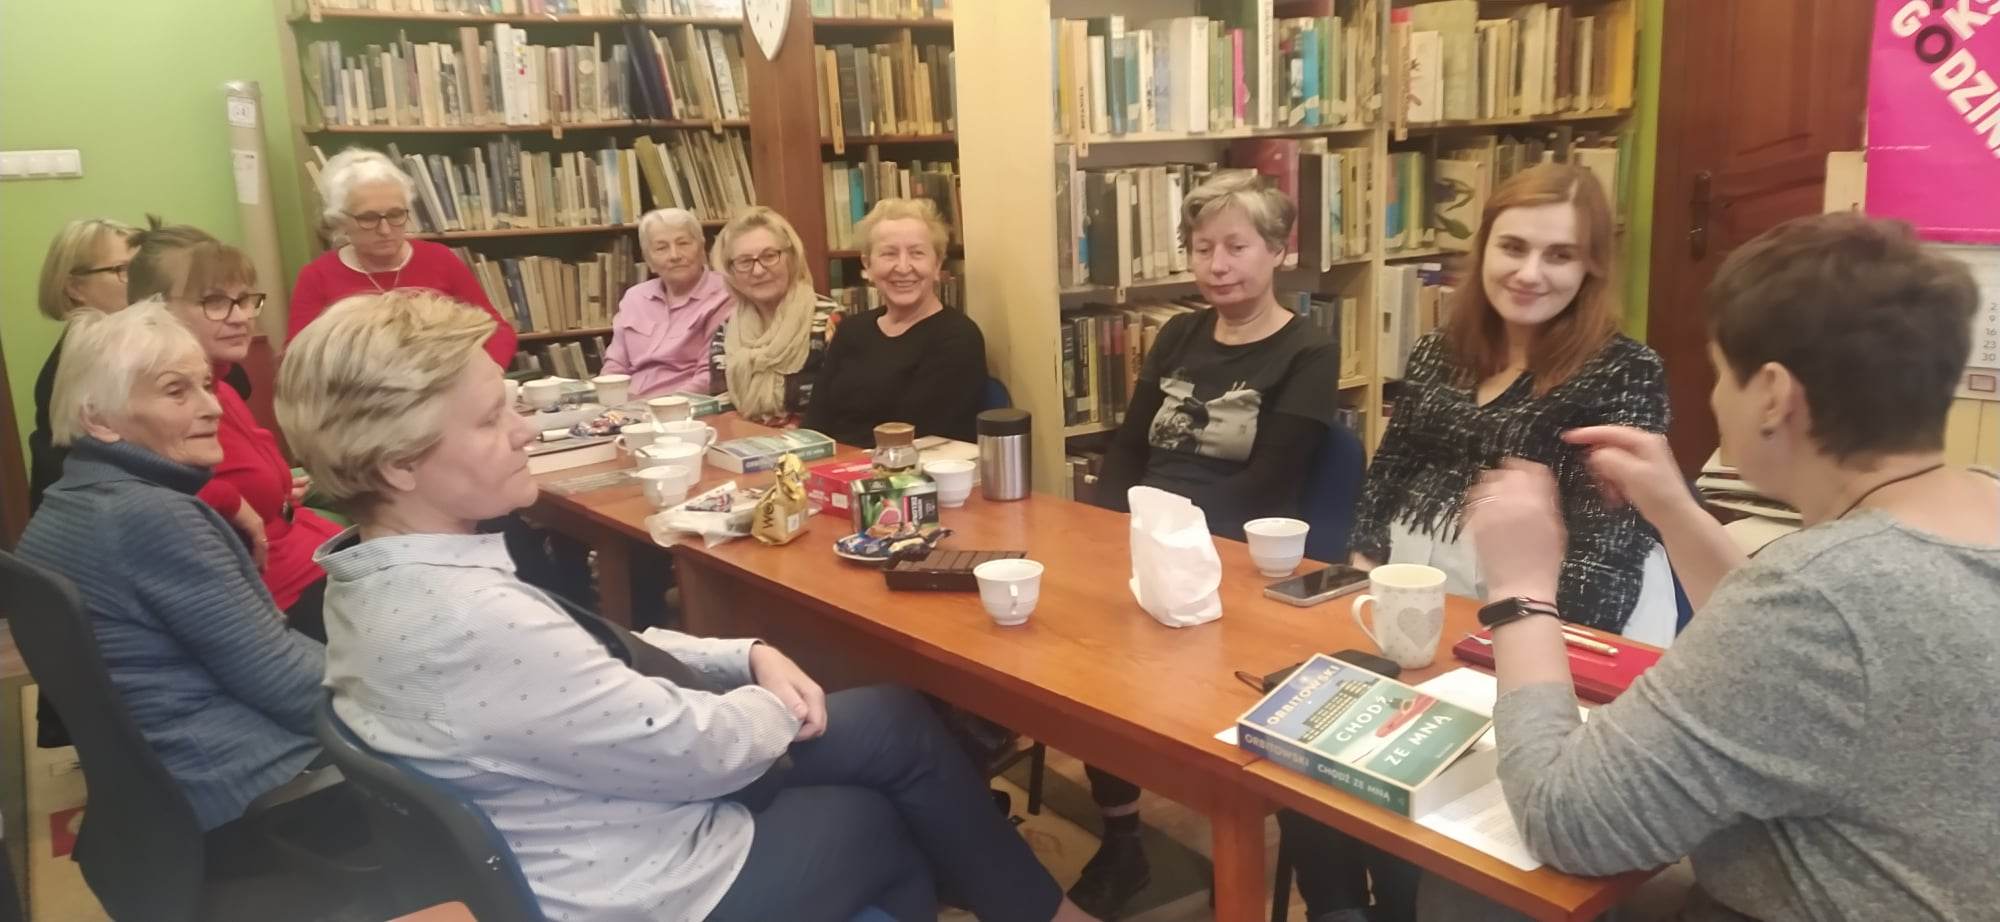 Członkinie Dyskusyjnego Klubu Książki siedzą przy stole i rozmawiają. Część z nich uśmiecha się. Na stole stoją filiżanki z kawą oraz leża ciasteczka.